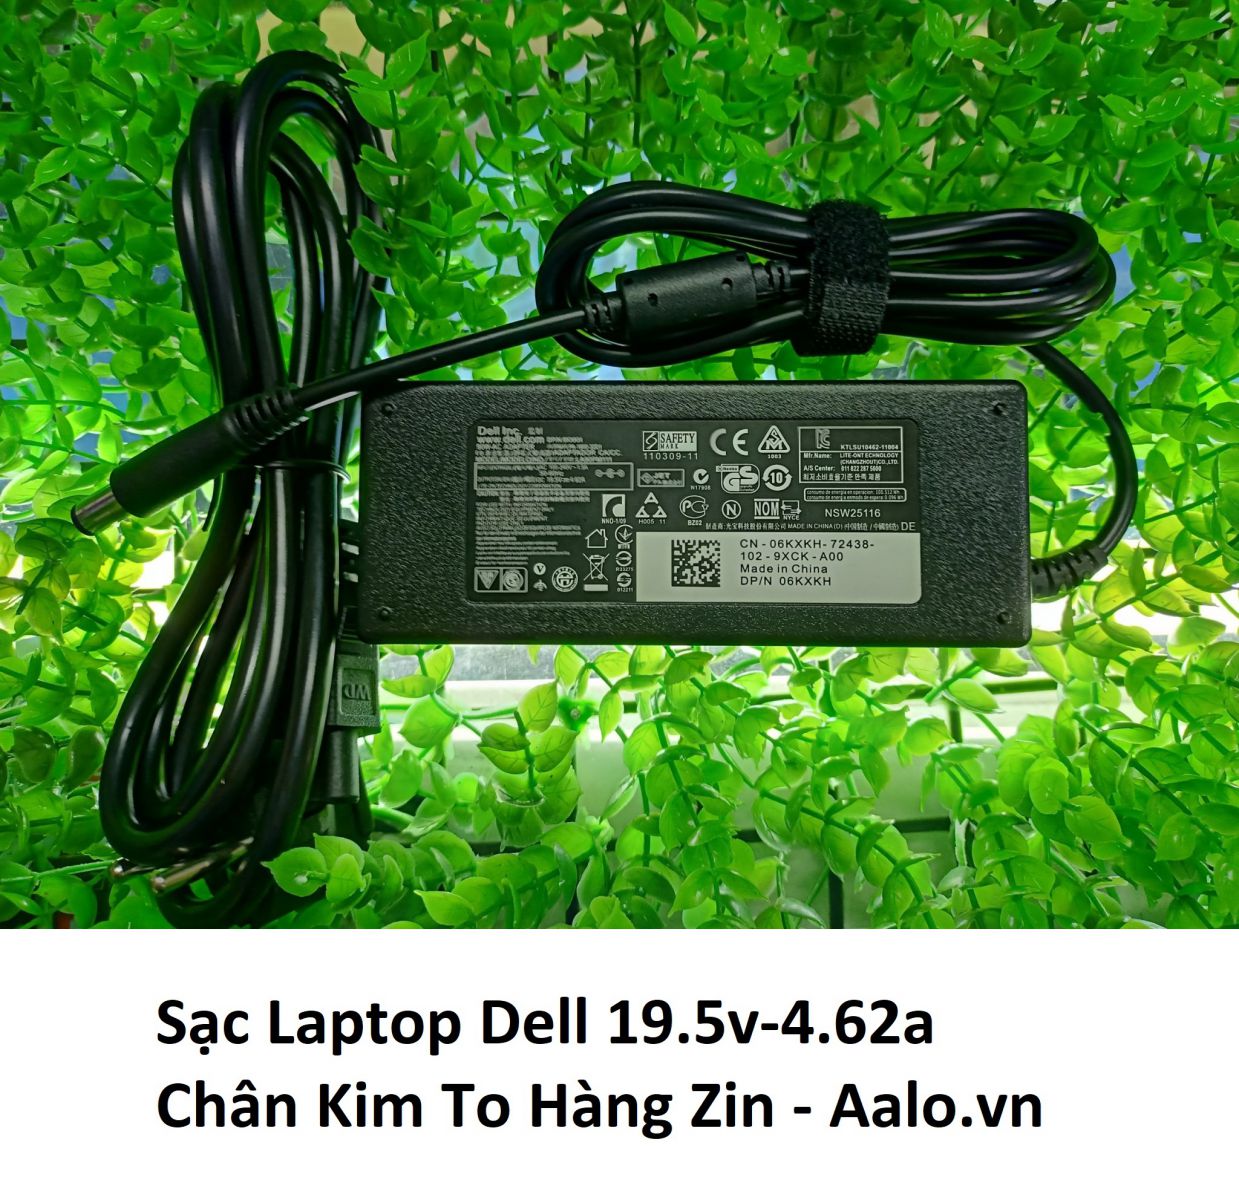 Sạc Laptop Dell 19.5v-4.62a Chân Kim To Hàng Zin